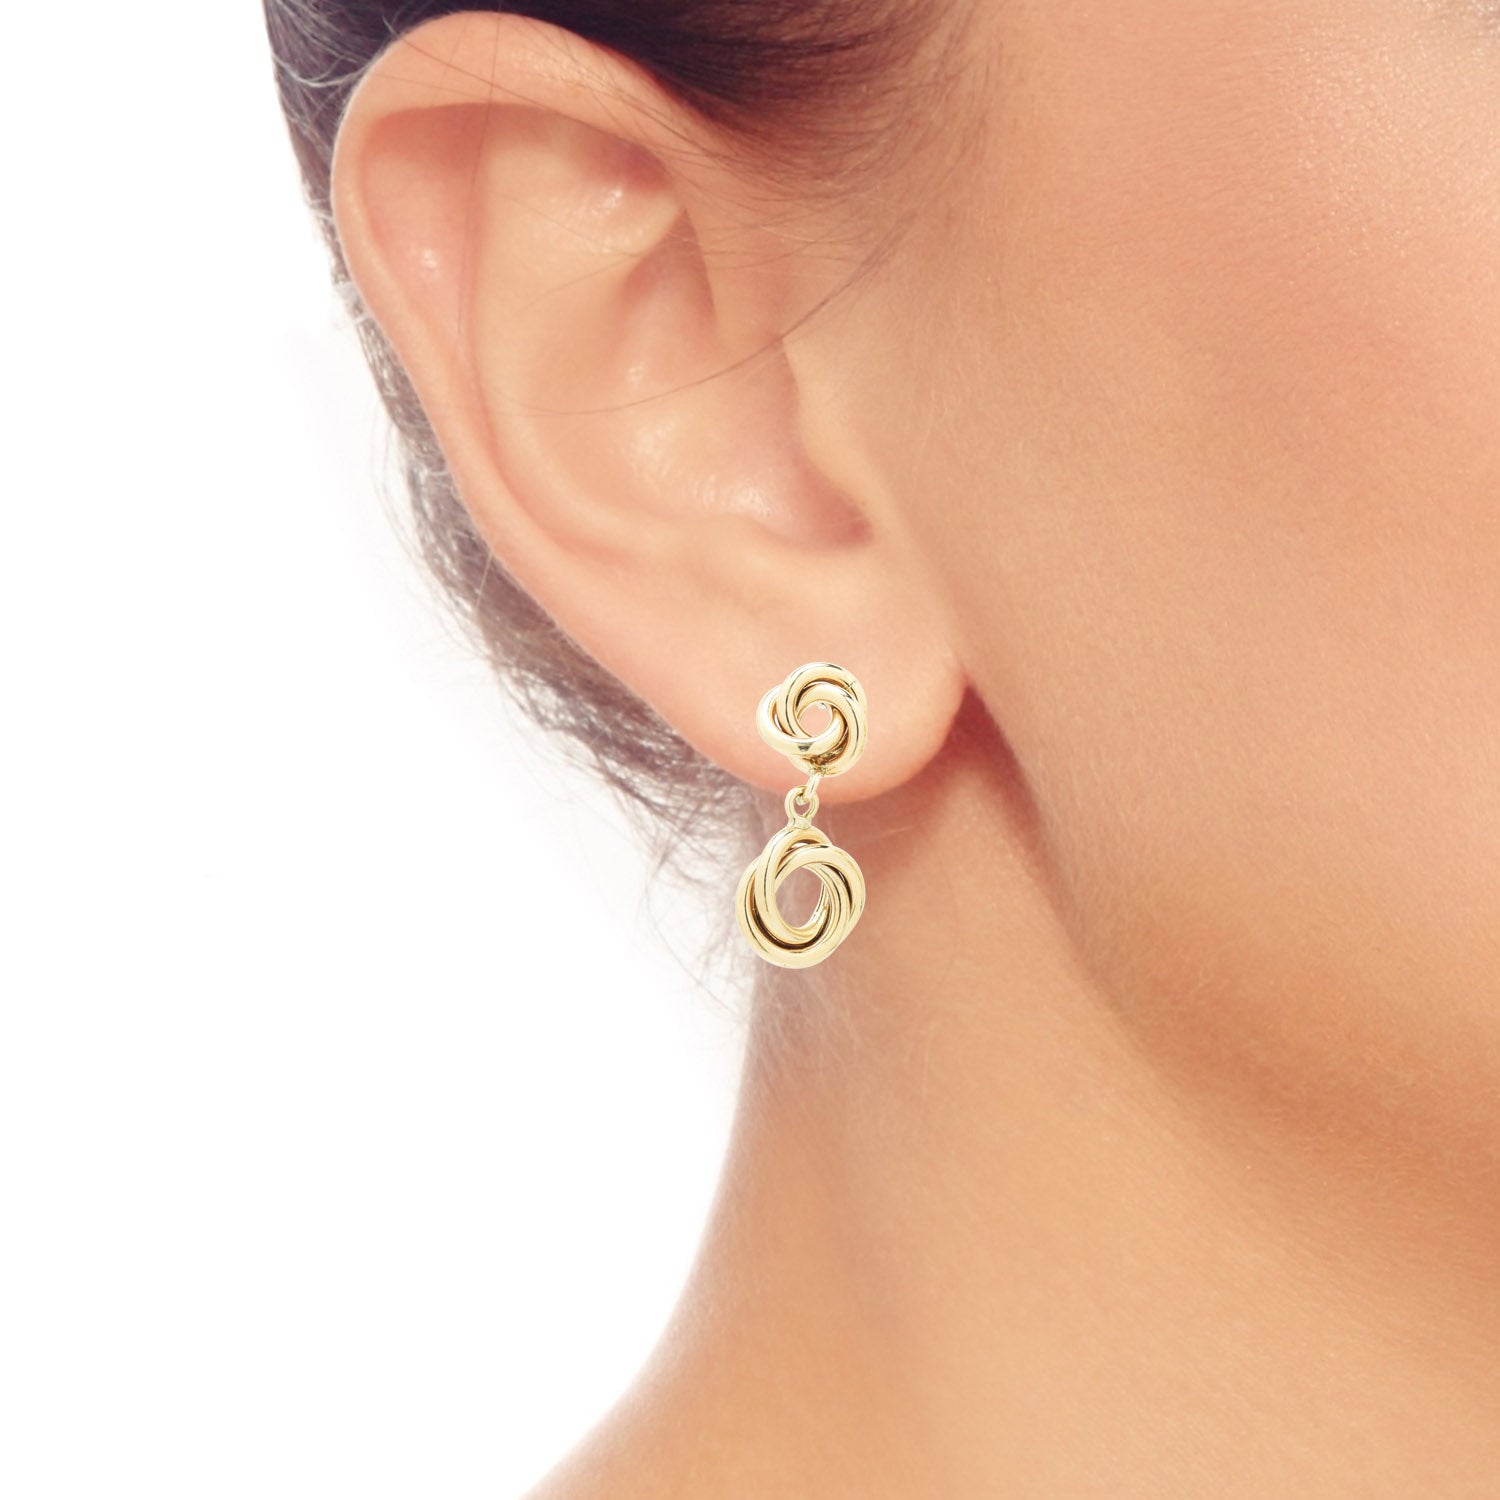 Double Love Knot Dangle Earrings in 14kt Yellow Gold